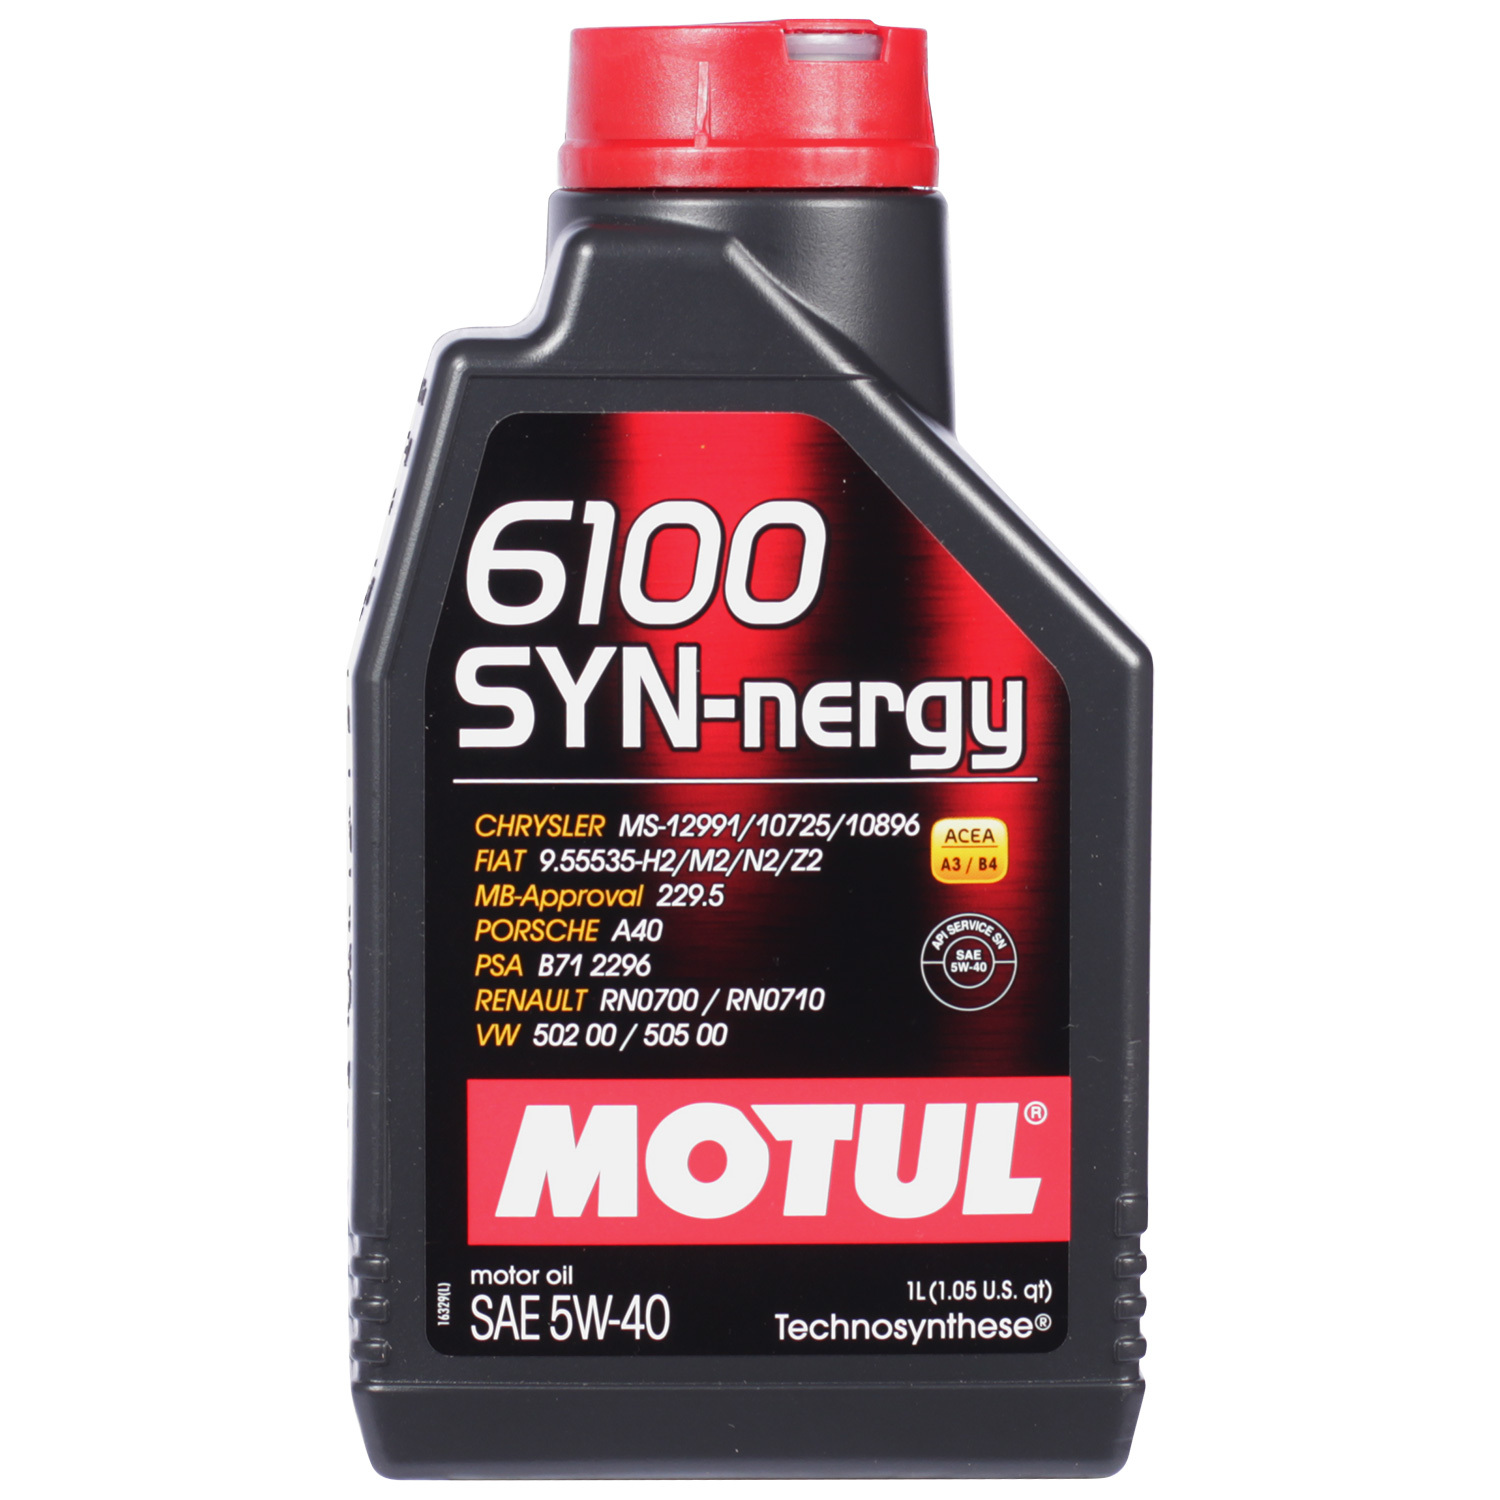 Motul Моторное масло Motul 6100 SYN-NERGY 5W-40, 1 л